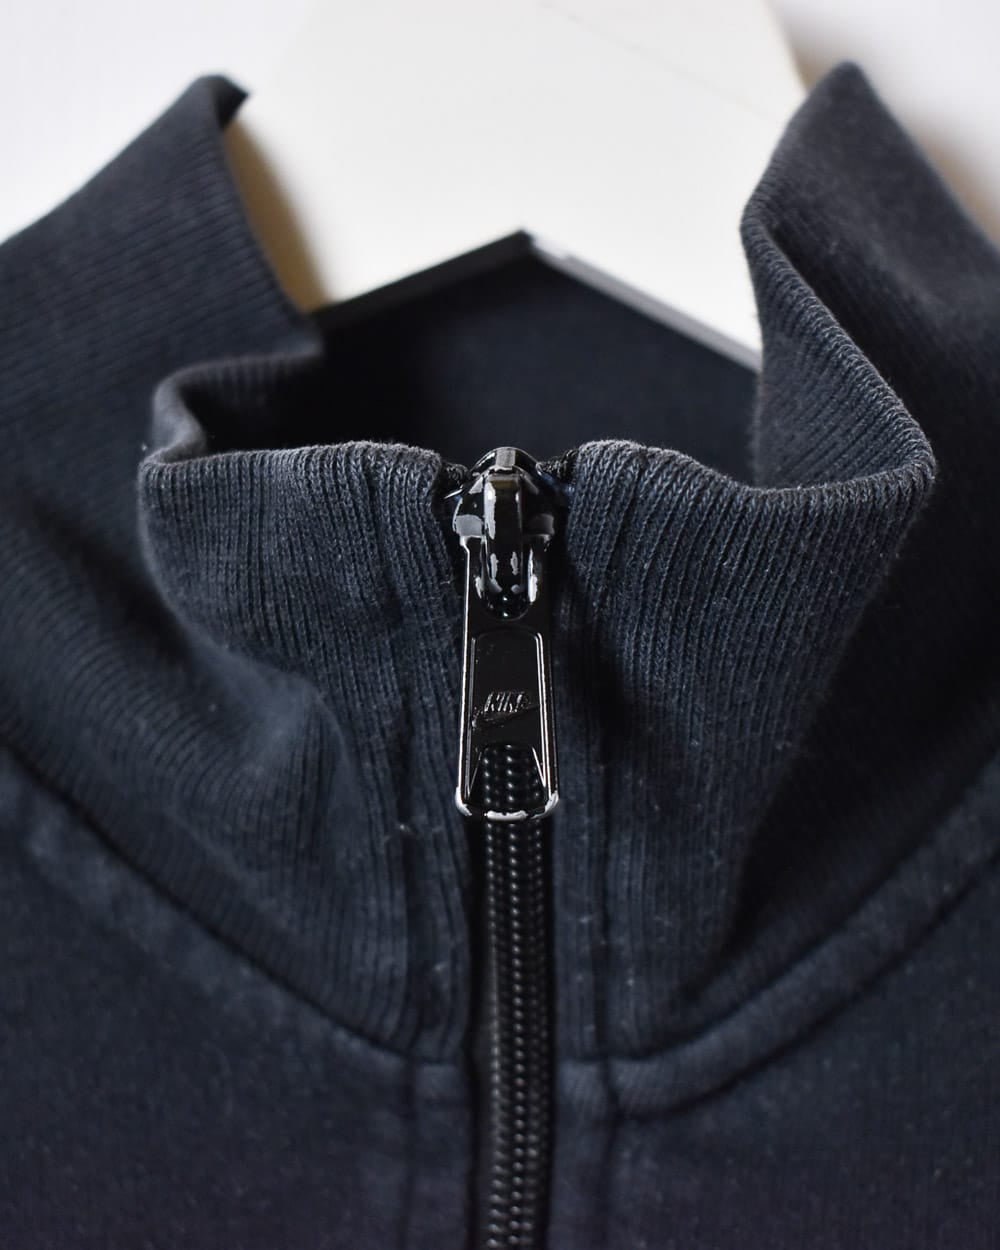 Navy Nike Zip-Through Sweatshirt - Large Women's